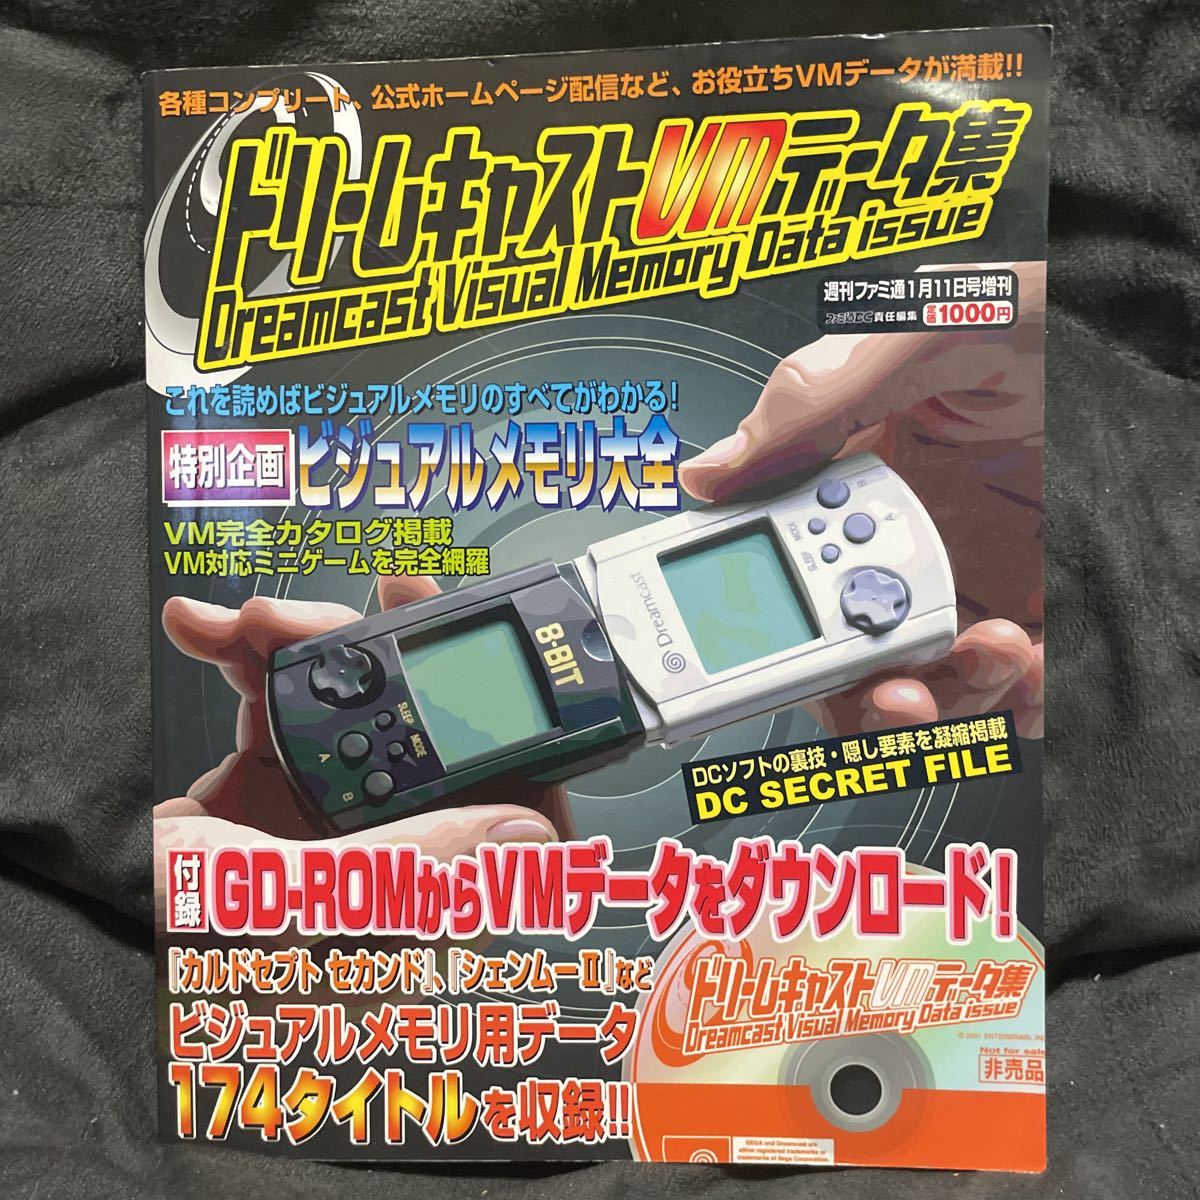 ドリームキャスト VMデータ集 ＆ いまこそ Dreamcast with SPECIAL GD!! ２冊セット　付録GD-ROM付き！　ビジュアルメモリ用データ集_画像5